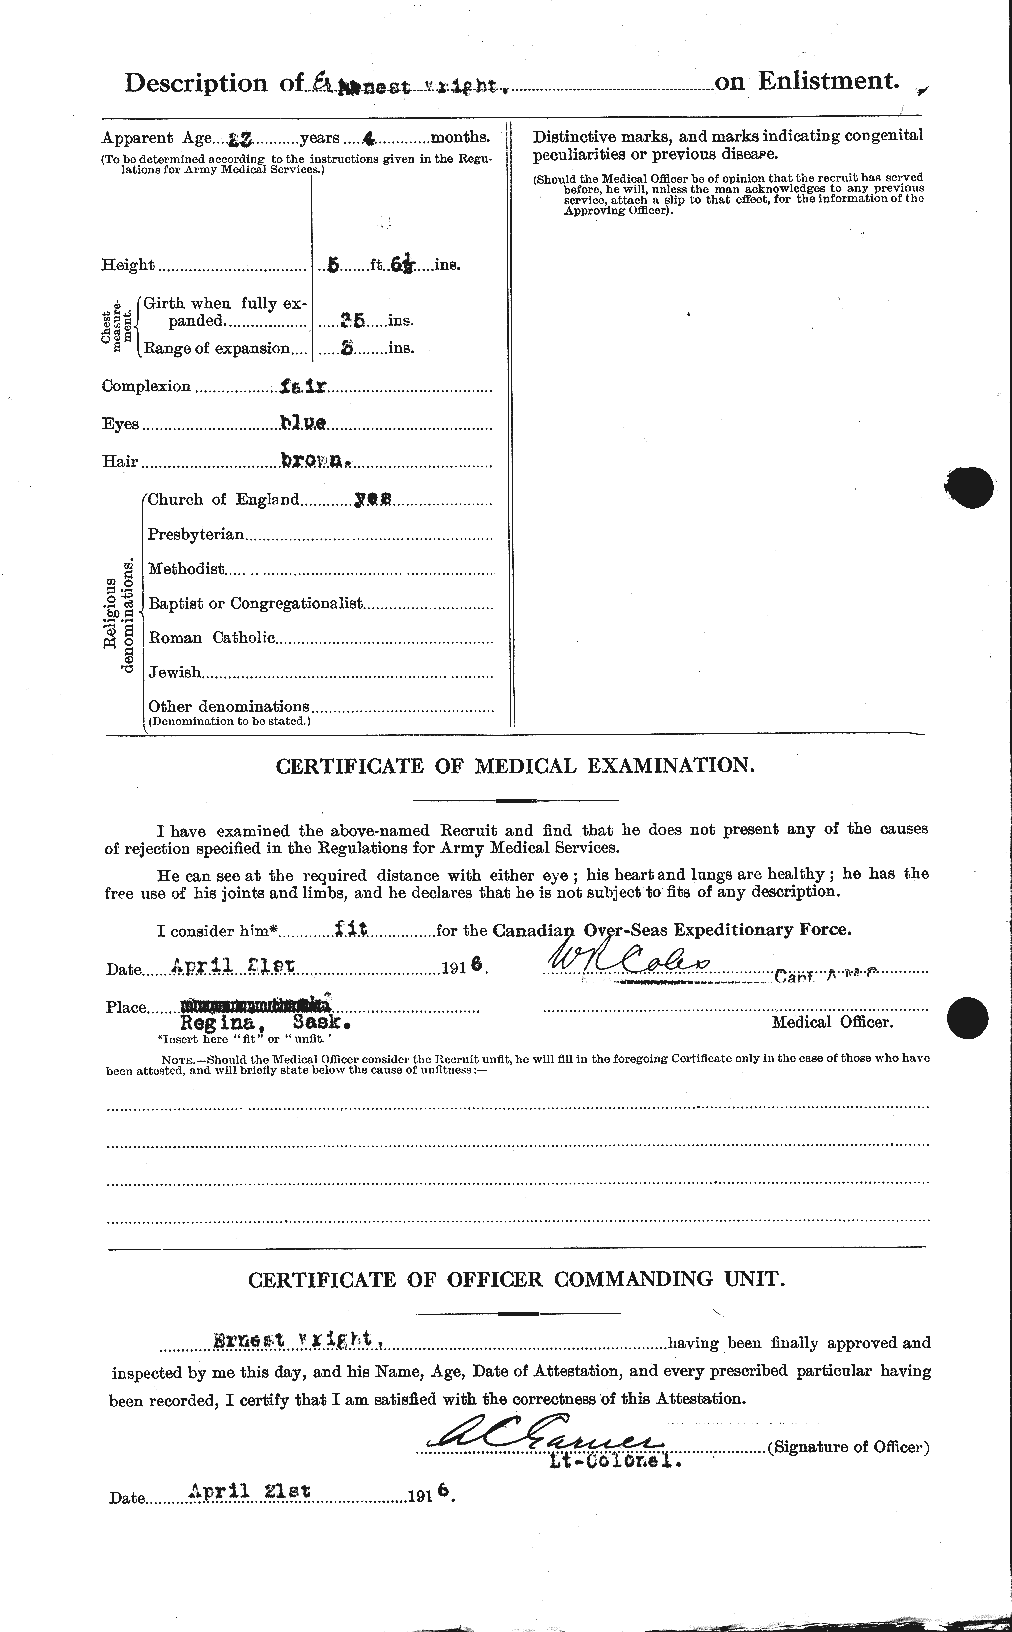 Dossiers du Personnel de la Première Guerre mondiale - CEC 683861b